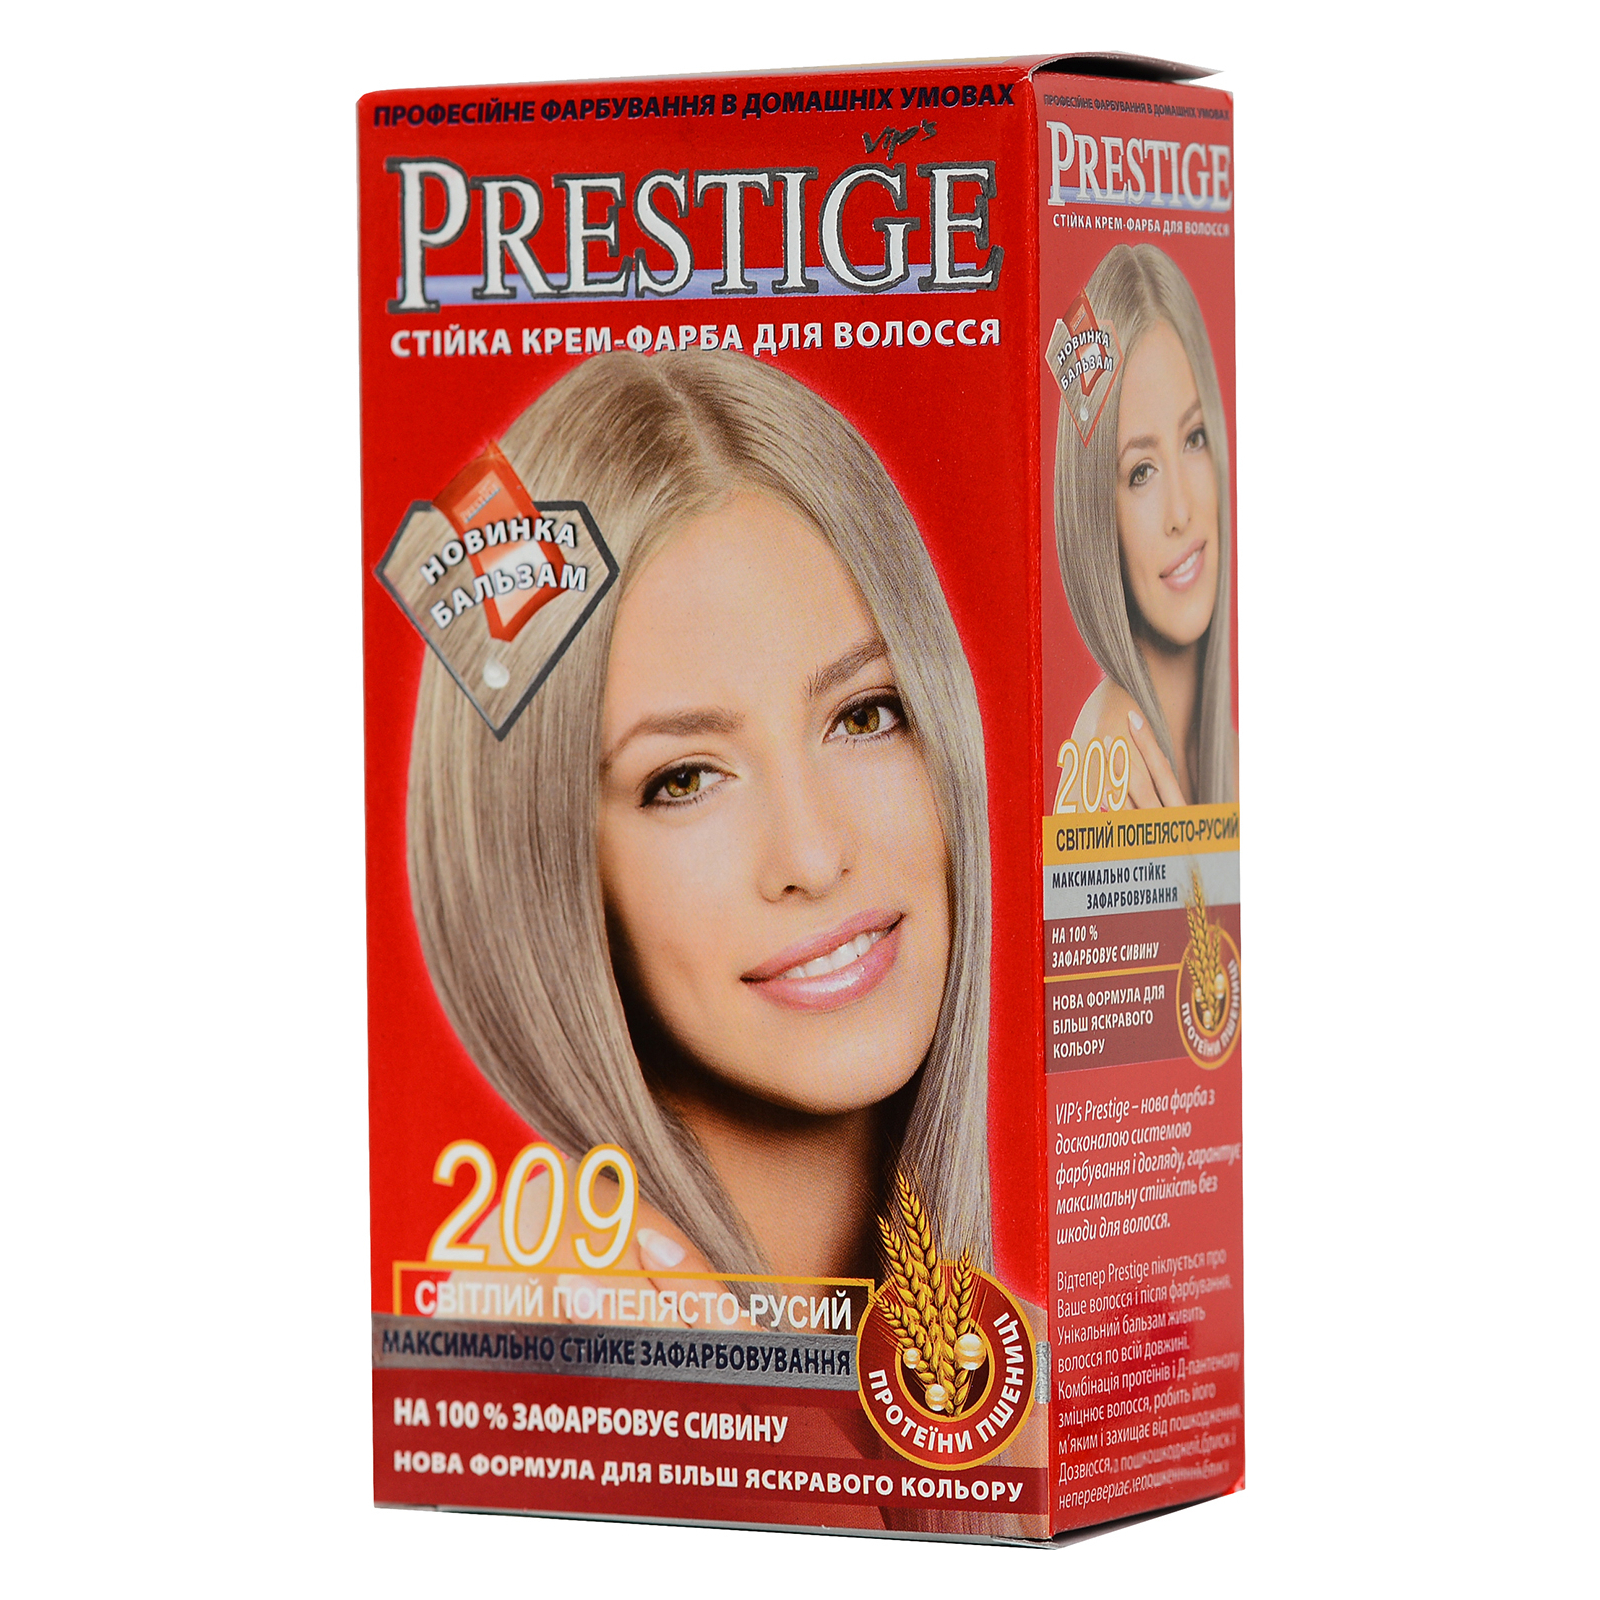 Фарба для волосся Vip's Prestige 209 - Світлий попелясто-русий 115 мл (3800010500920)